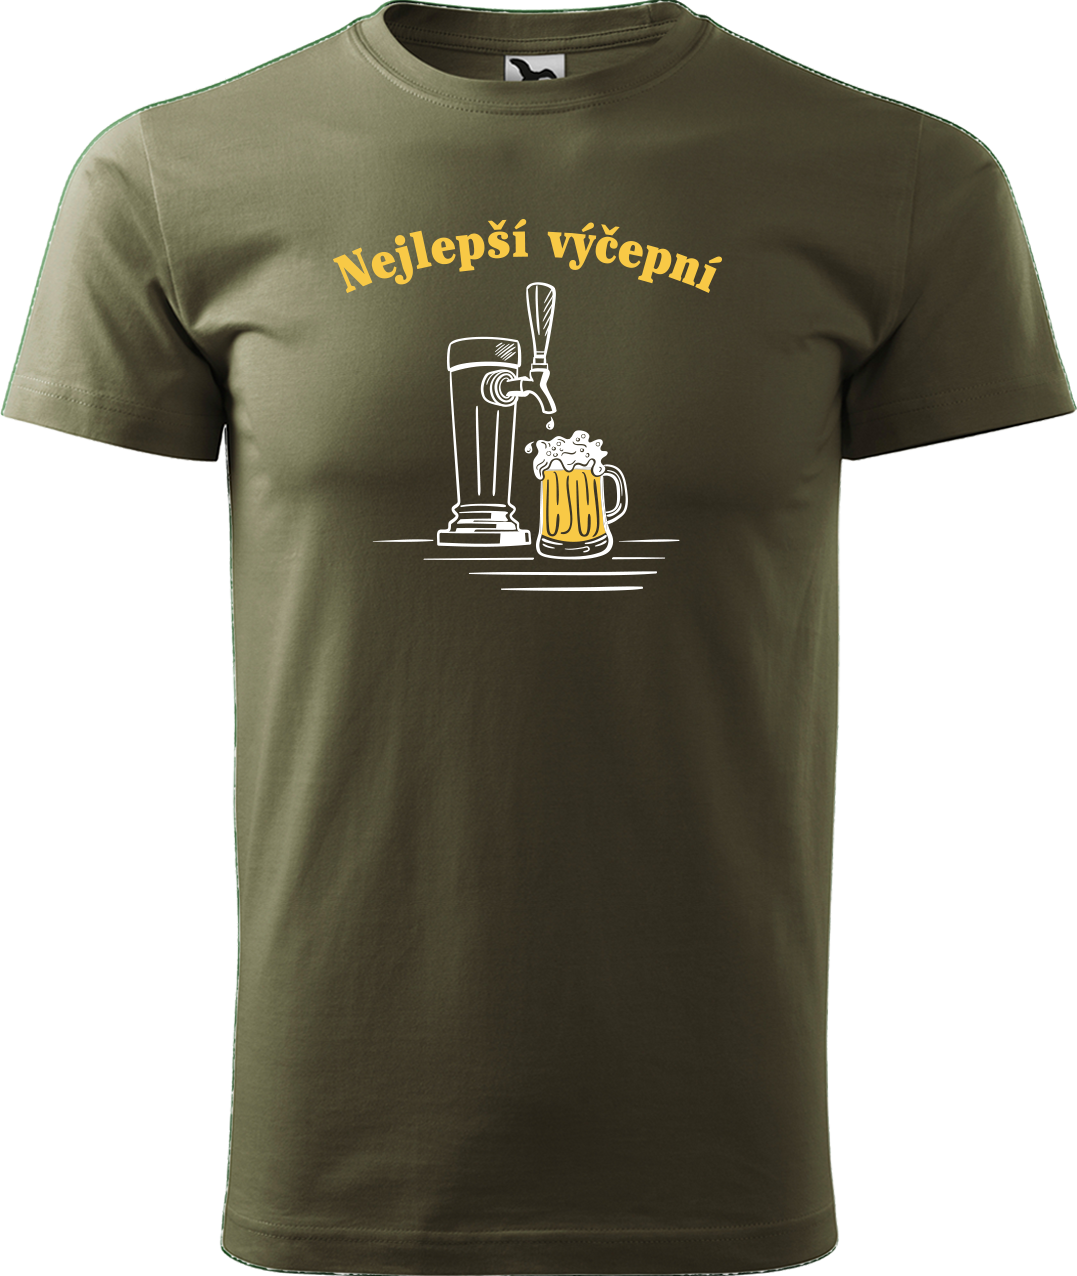 Pivní tričko - Nejlepší výčepní Velikost: 2XL, Barva: Military (69)